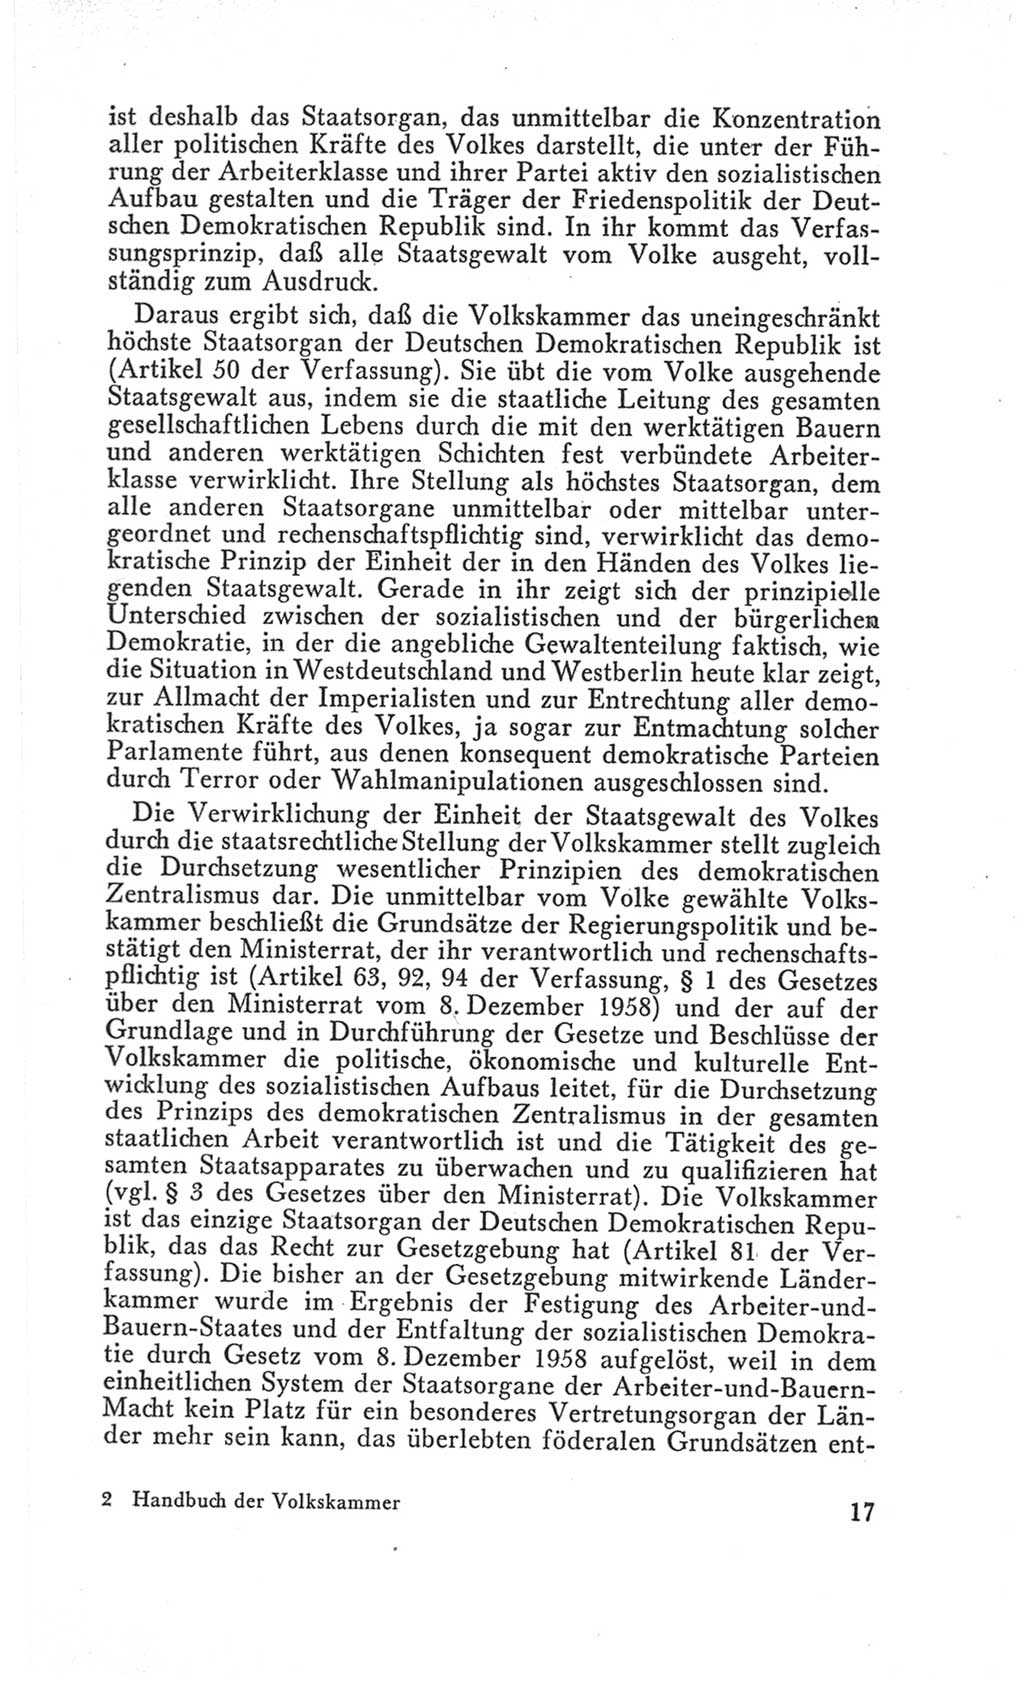 Handbuch der Volkskammer (VK) der Deutschen Demokratischen Republik (DDR), 3. Wahlperiode 1958-1963, Seite 17 (Hdb. VK. DDR 3. WP. 1958-1963, S. 17)